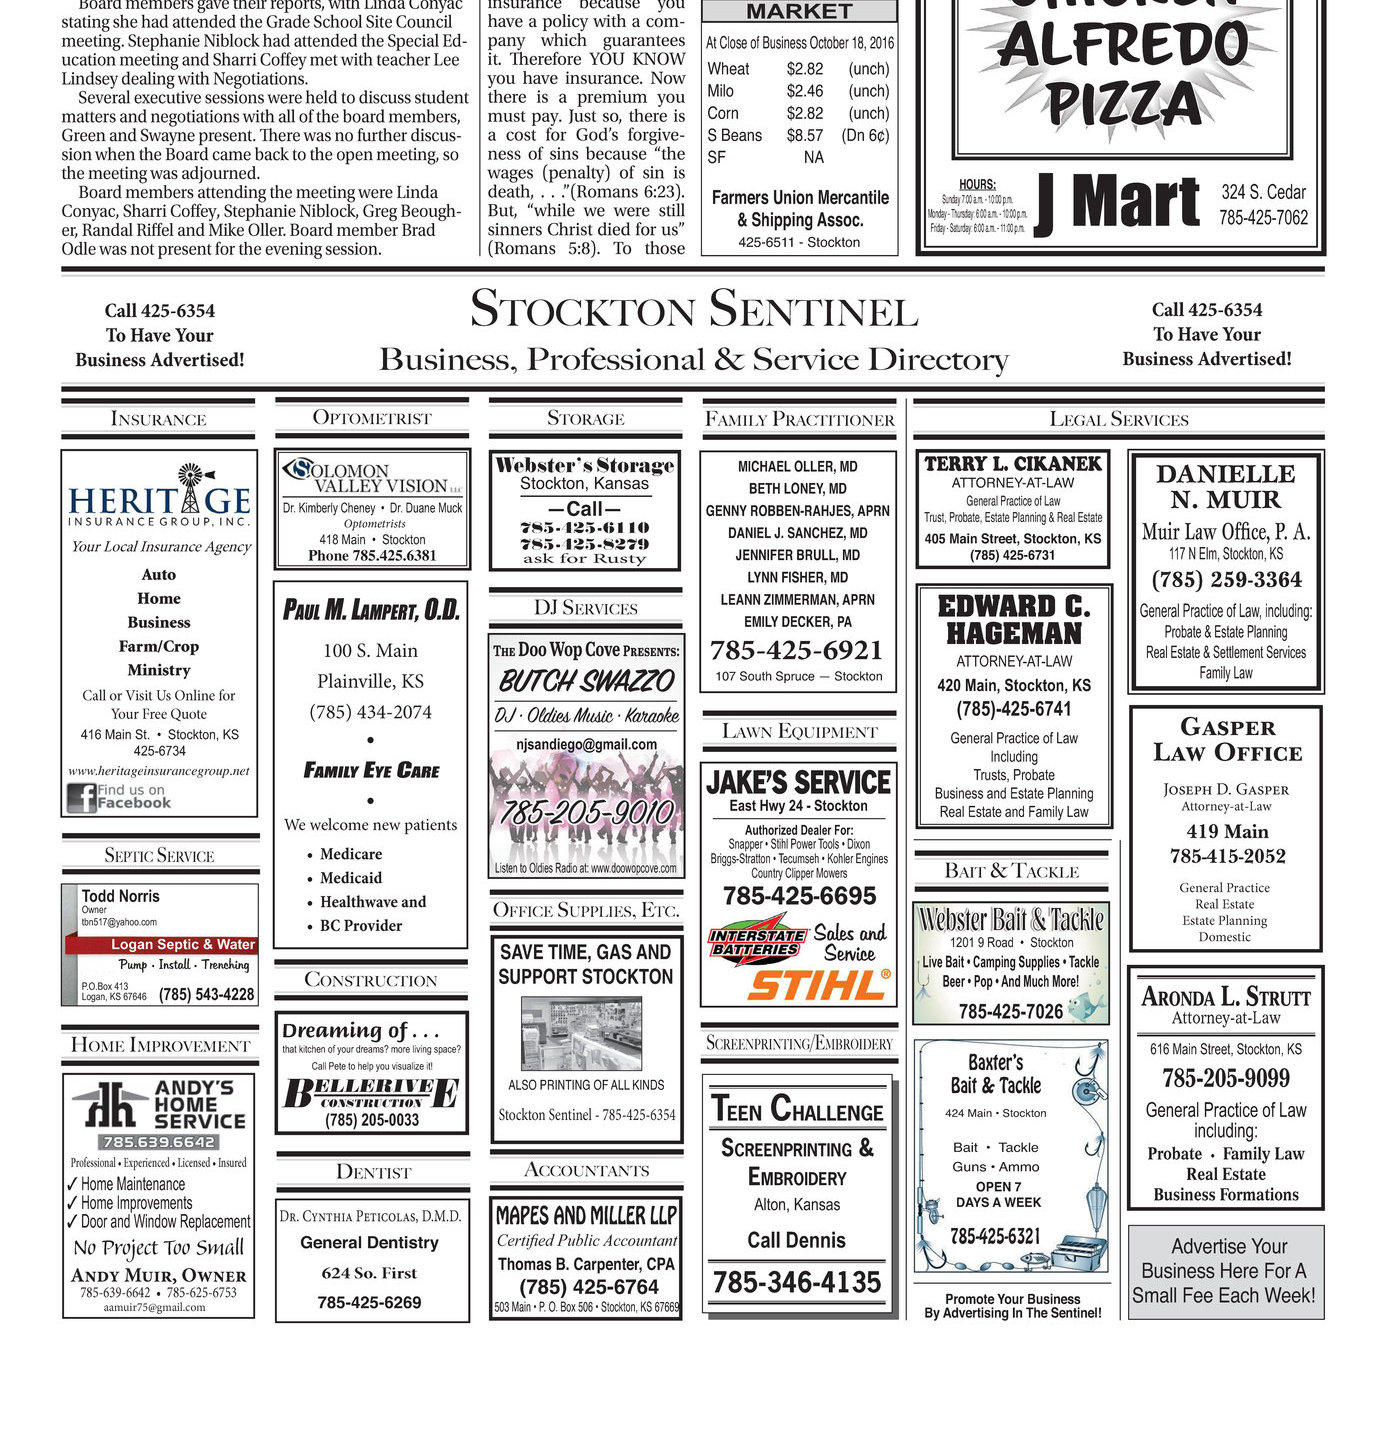 Page 4A - Stockton Sentinel 10 20 2016 E Edition